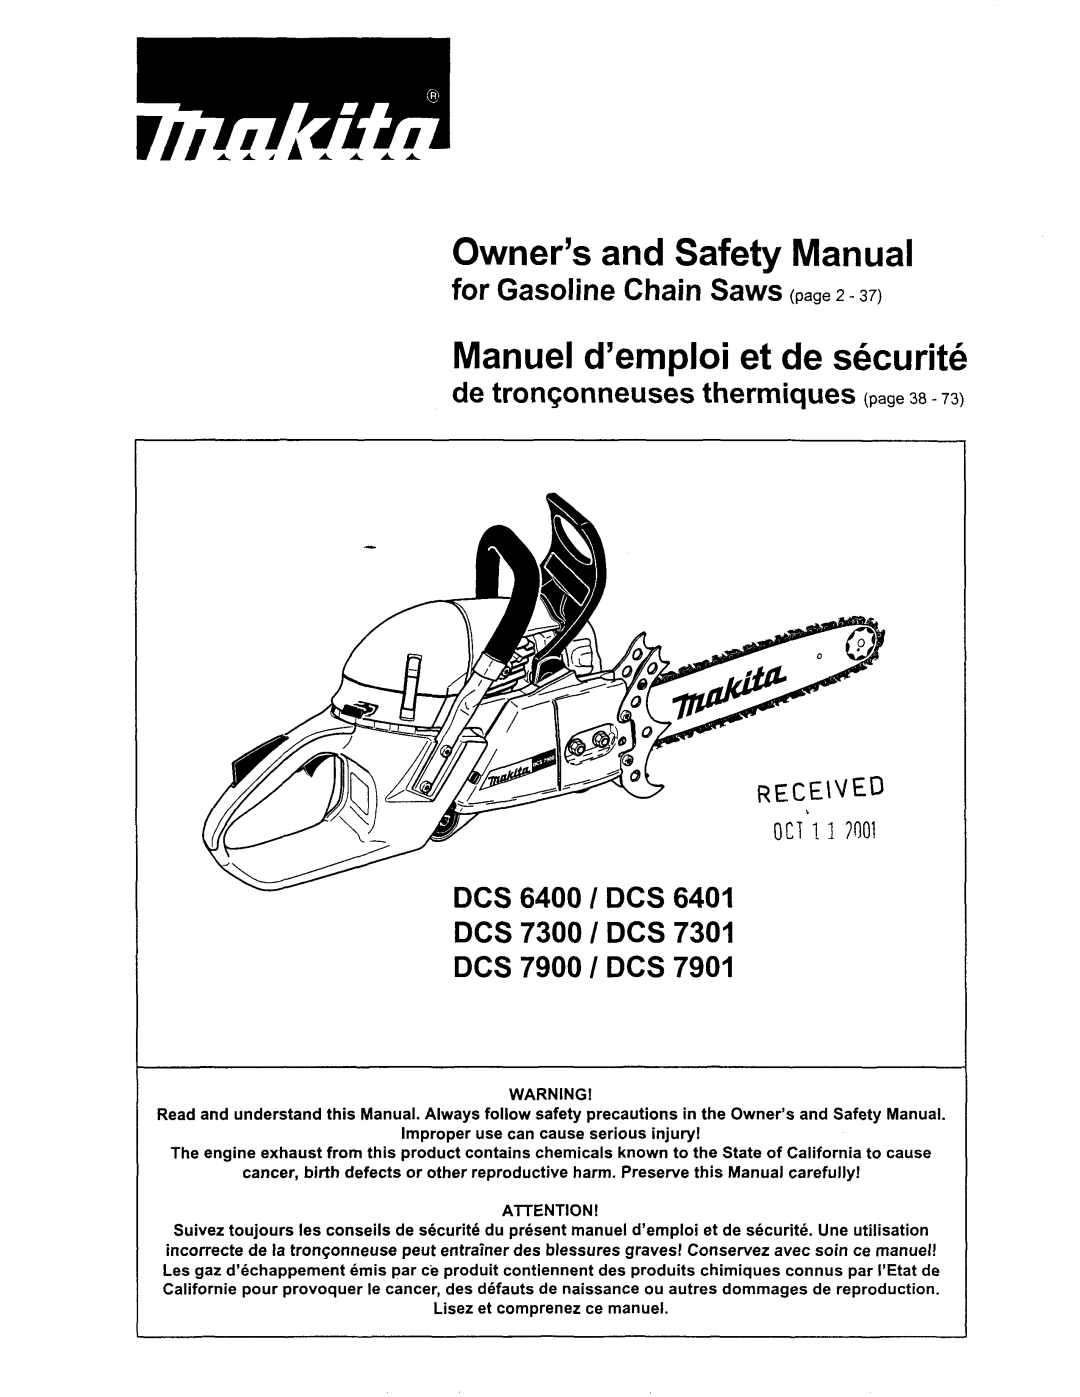 Makita DCS 7901, DCS6401 manual Owner’s and Safety Manual, Manuel d’emploi et de securite, DCS 7300 / DCS DCS 7900 / DCS 